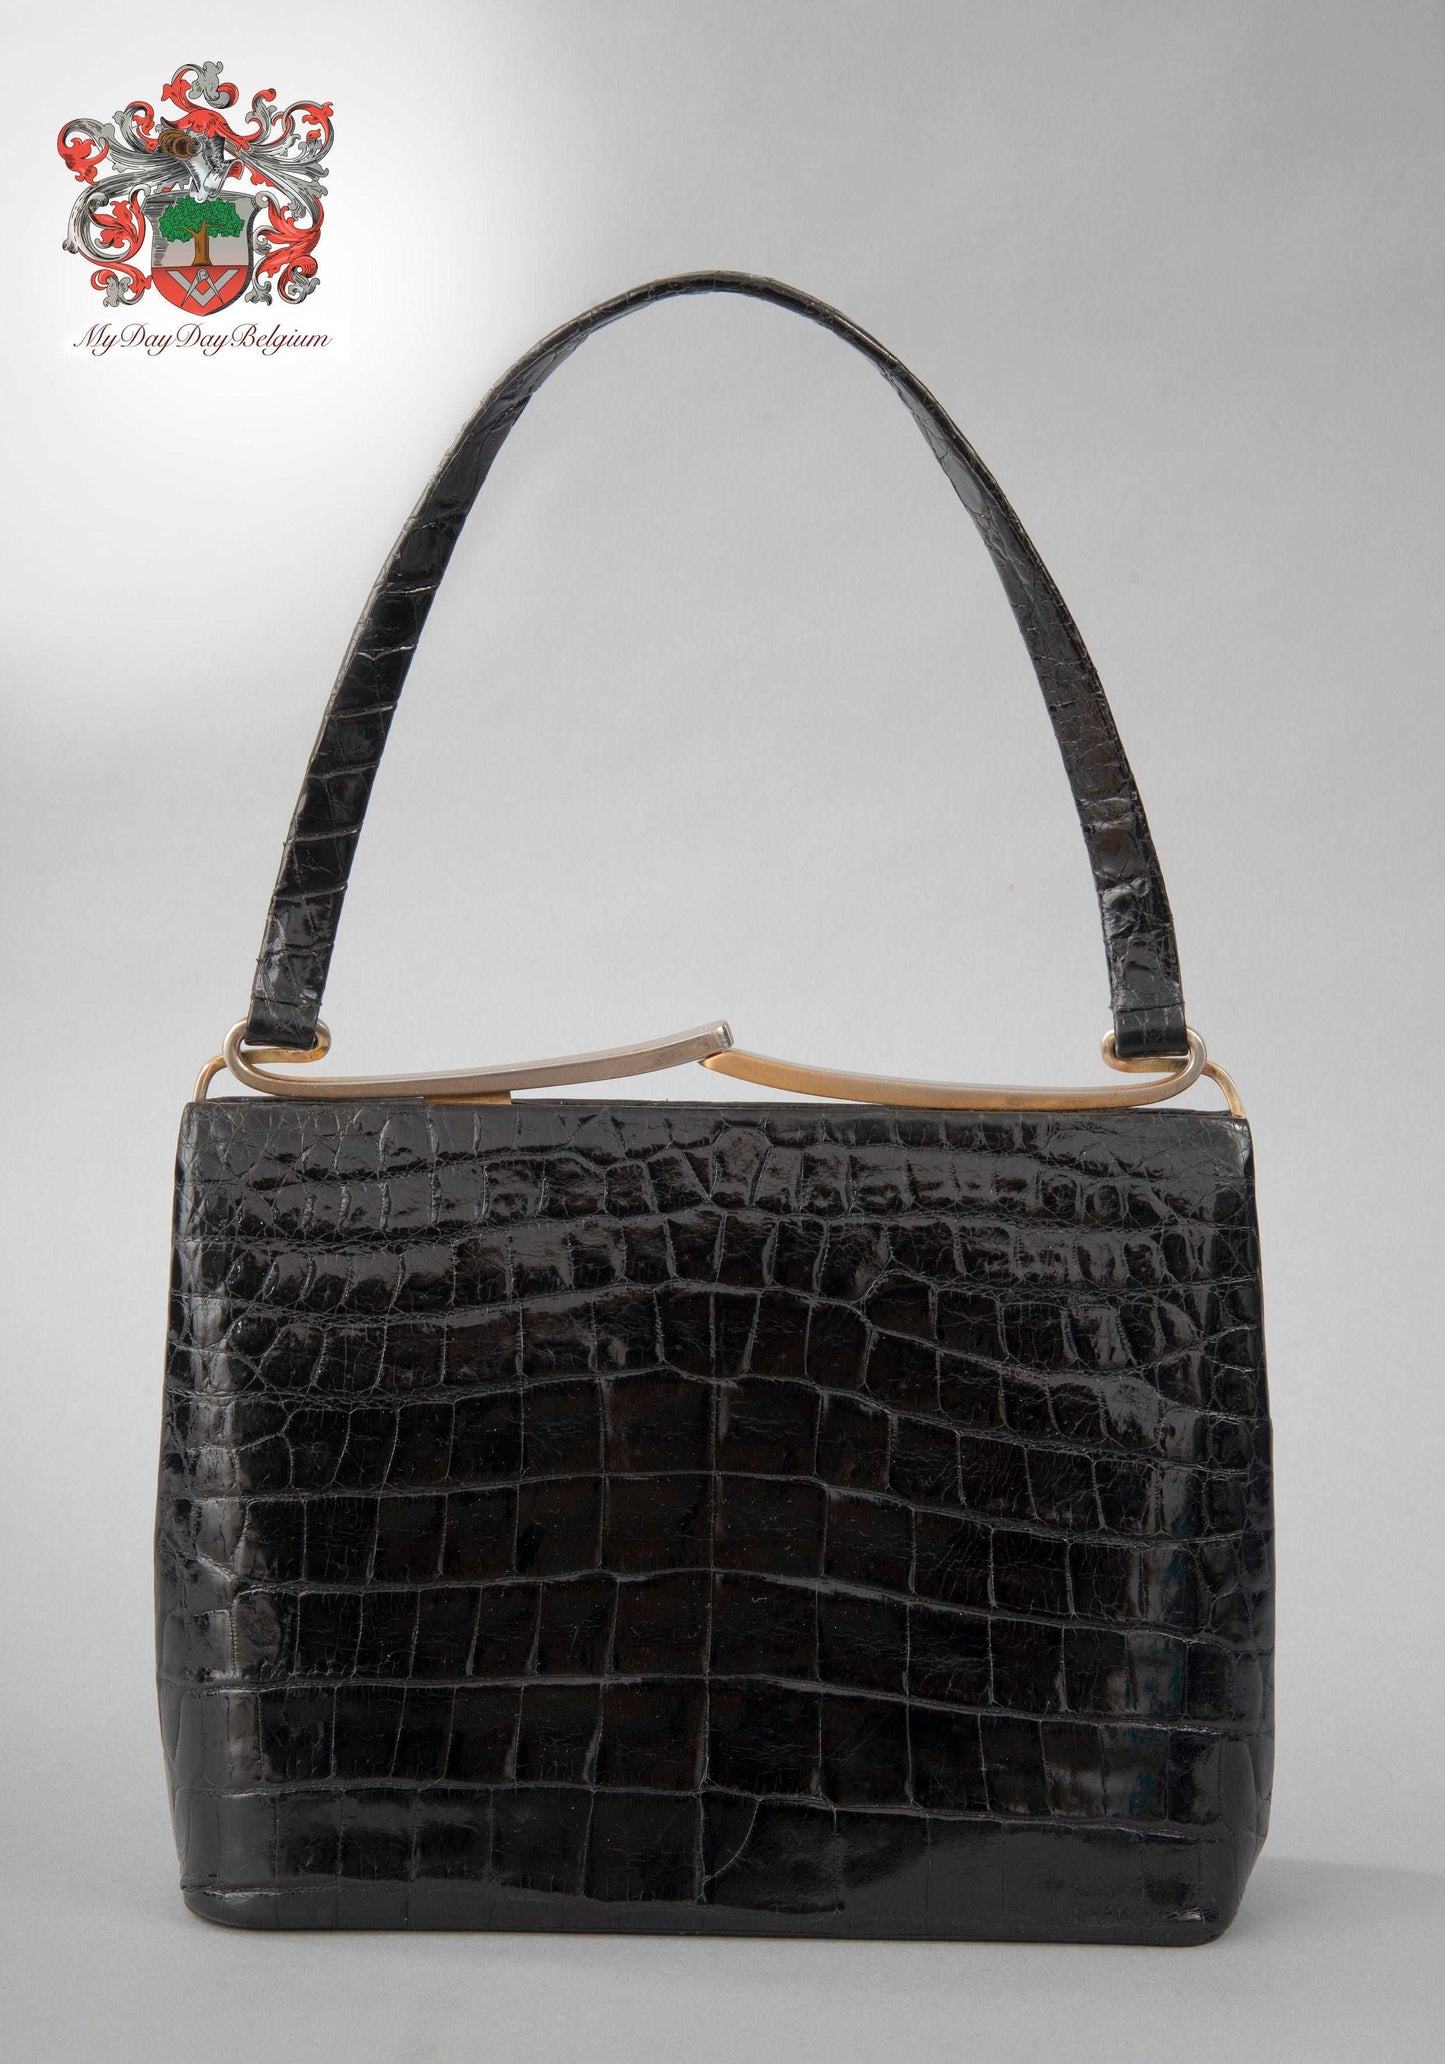 Delvaux vintage handbag in croco leather 1960